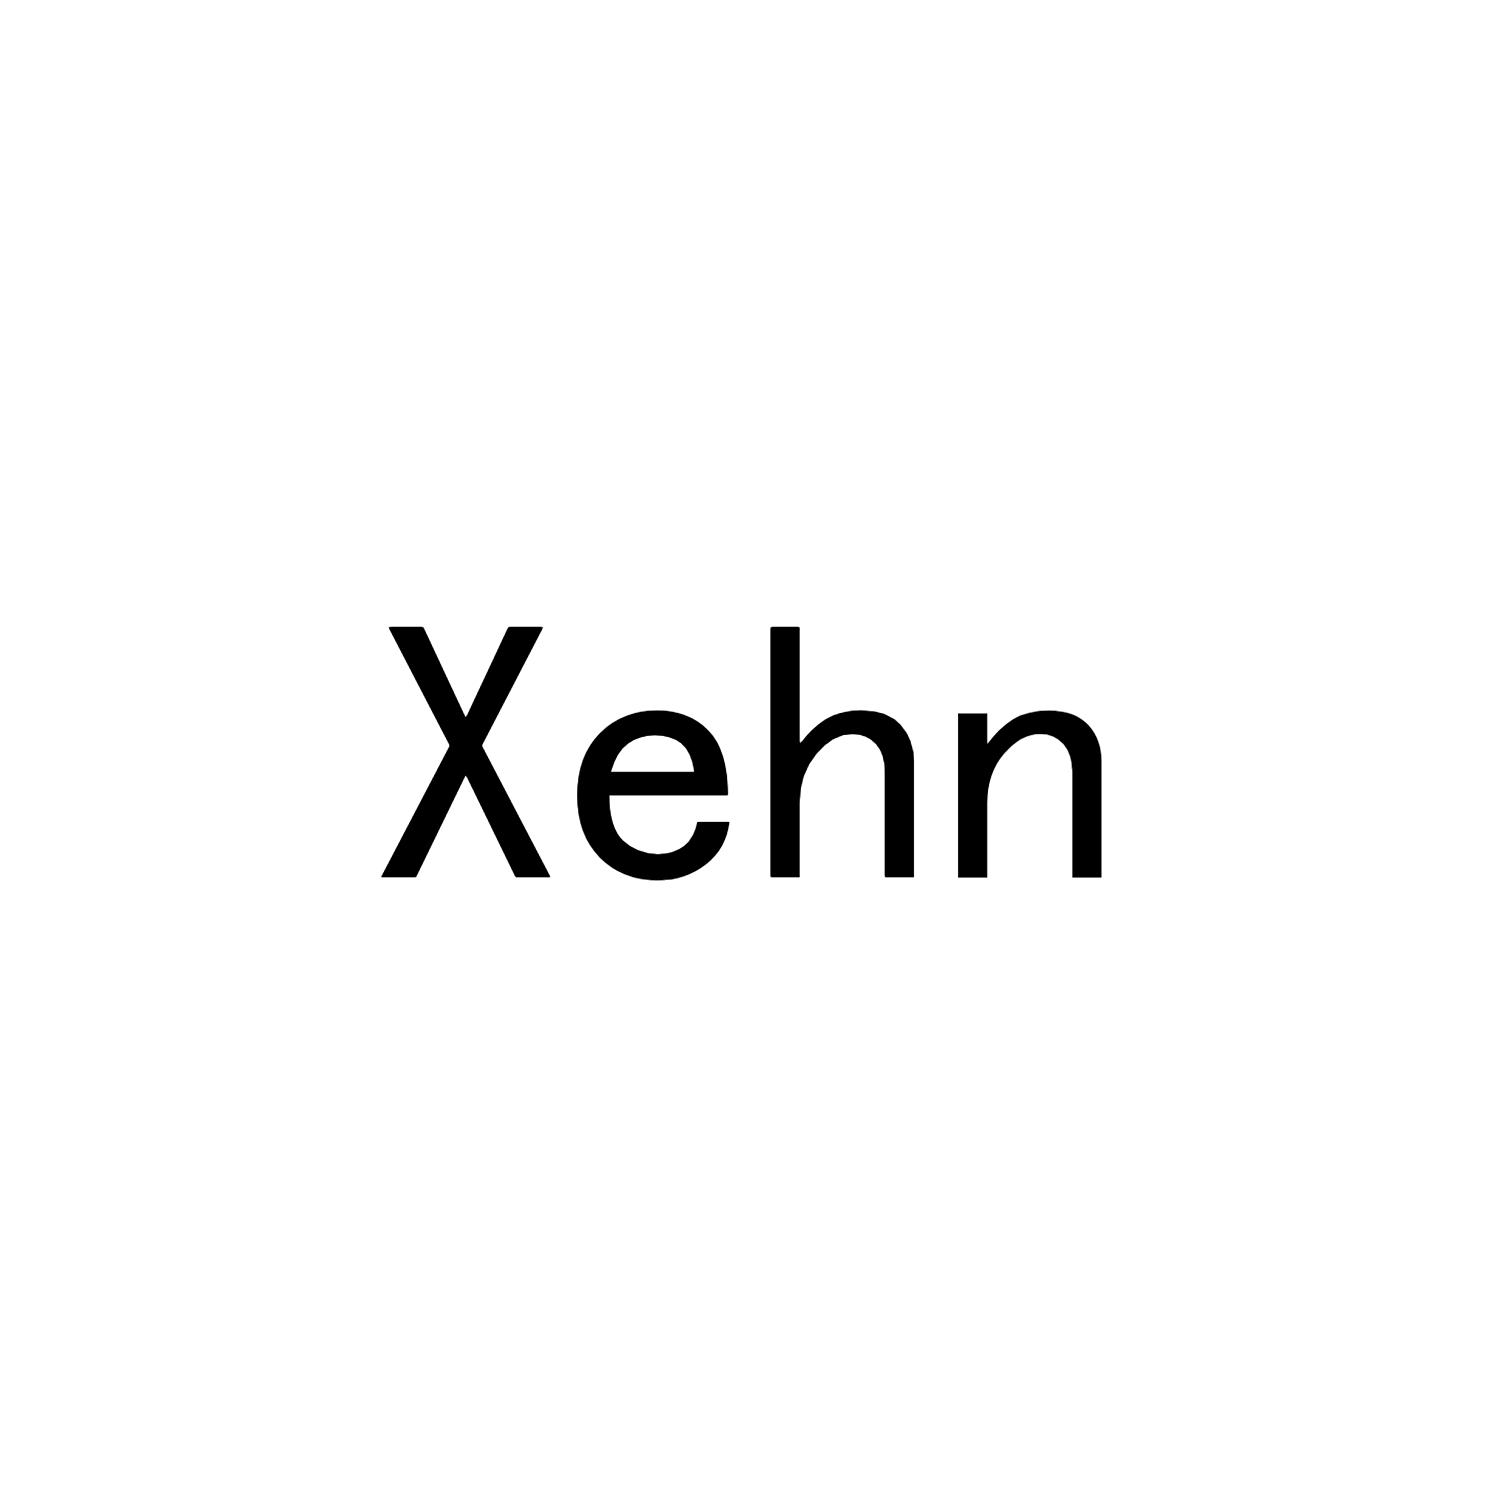 XEHN